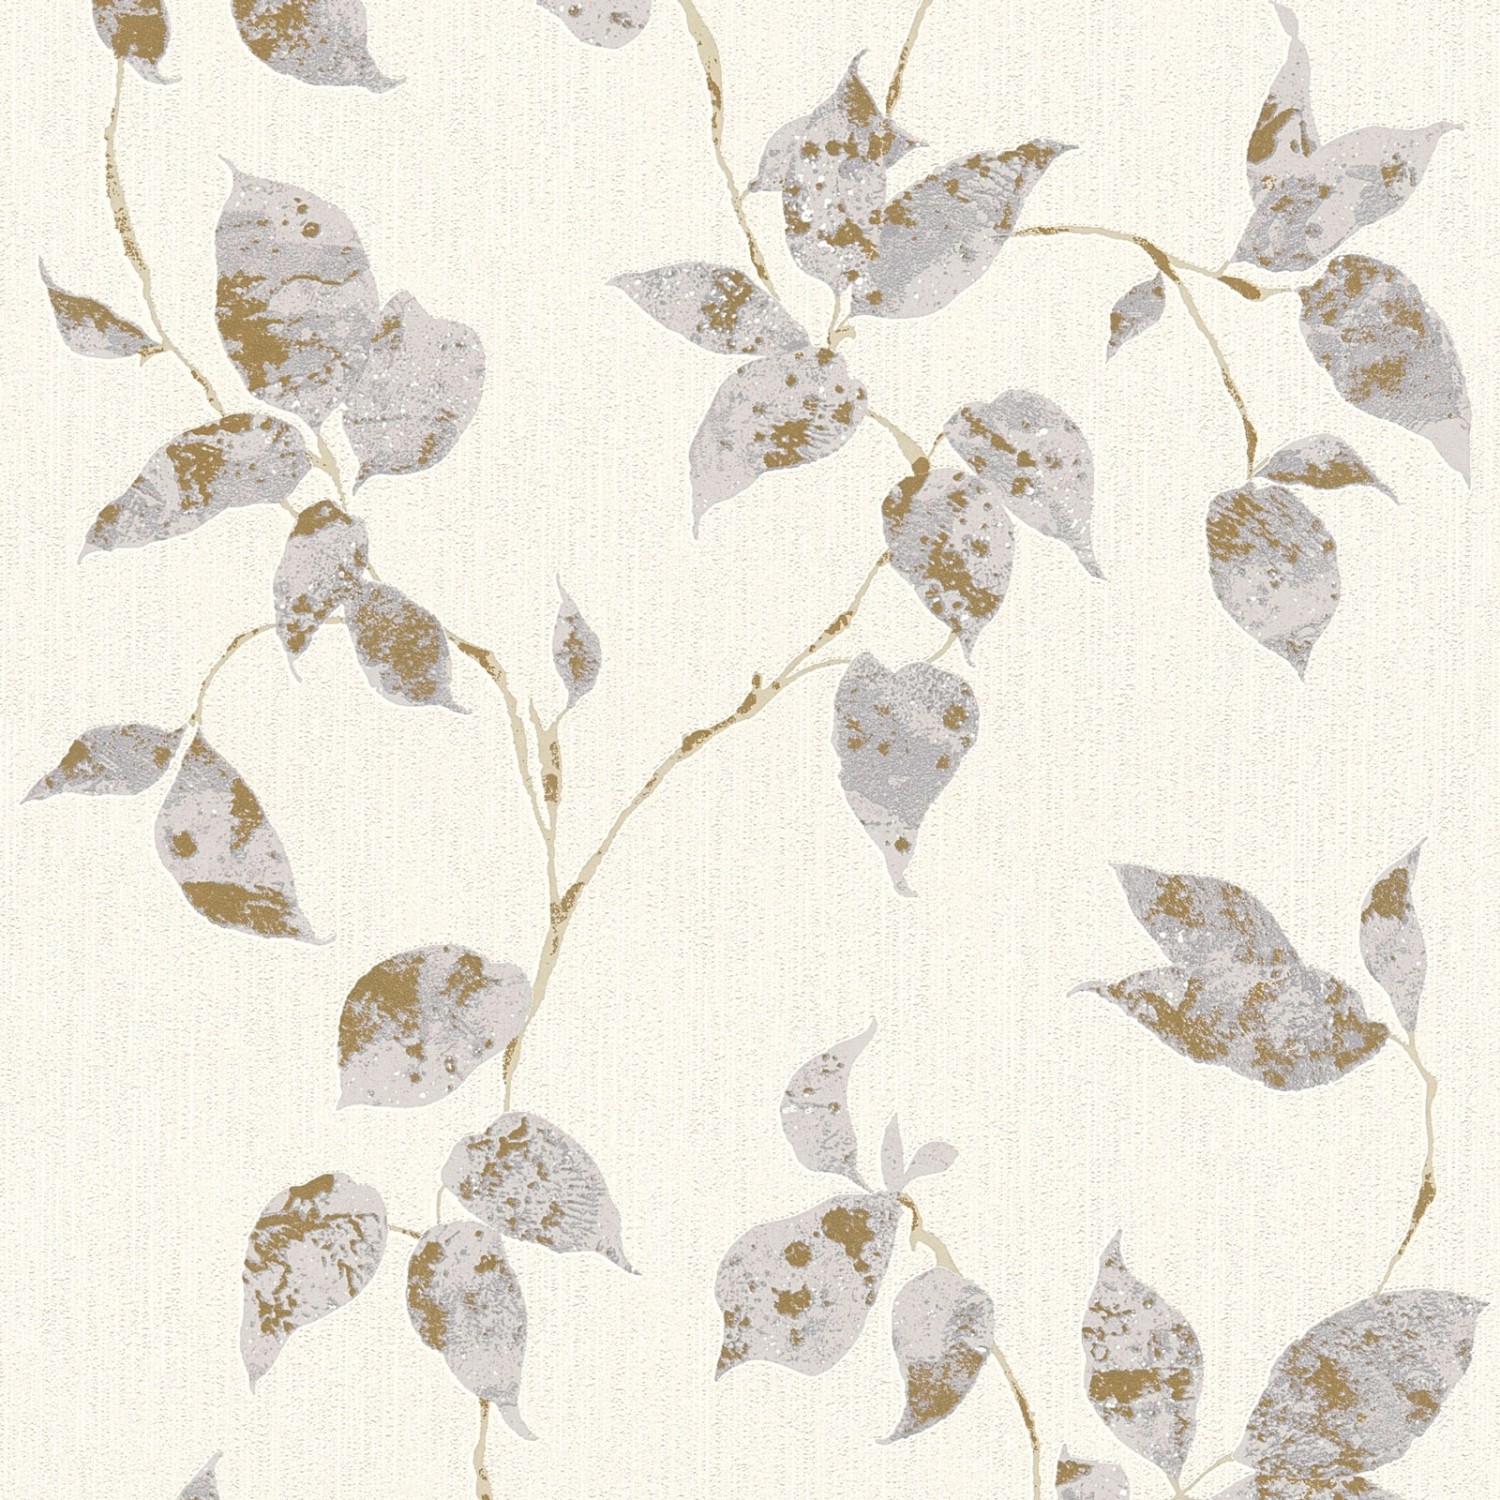 Bricoflor Blätter Tapete in Weiß Grau Gold Ranken Vliestapete mit Blatt Design Ideal für Esszimmer und Schlafzimmer Flor